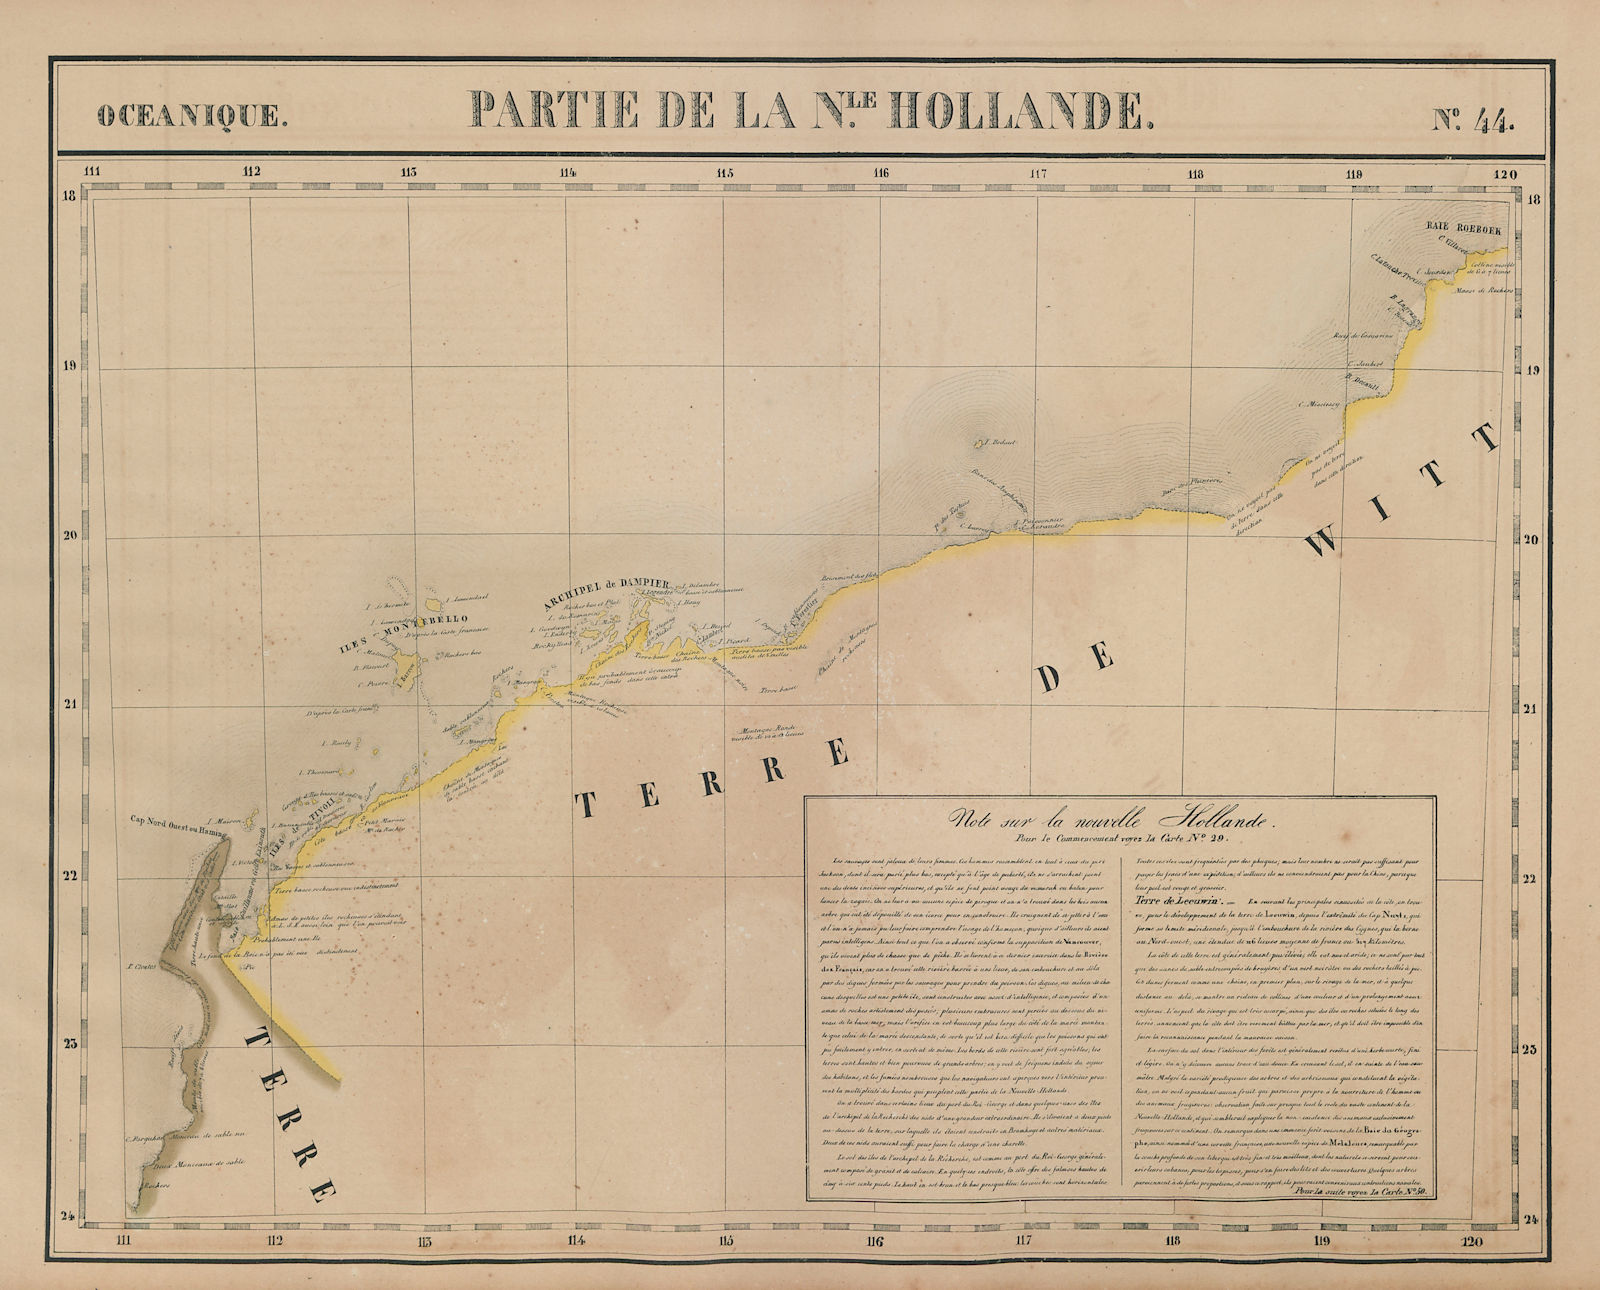 Associate Product Océanique. Partie de la Nle Hollande #44 Western Australia VANDERMAELEN 1827 map